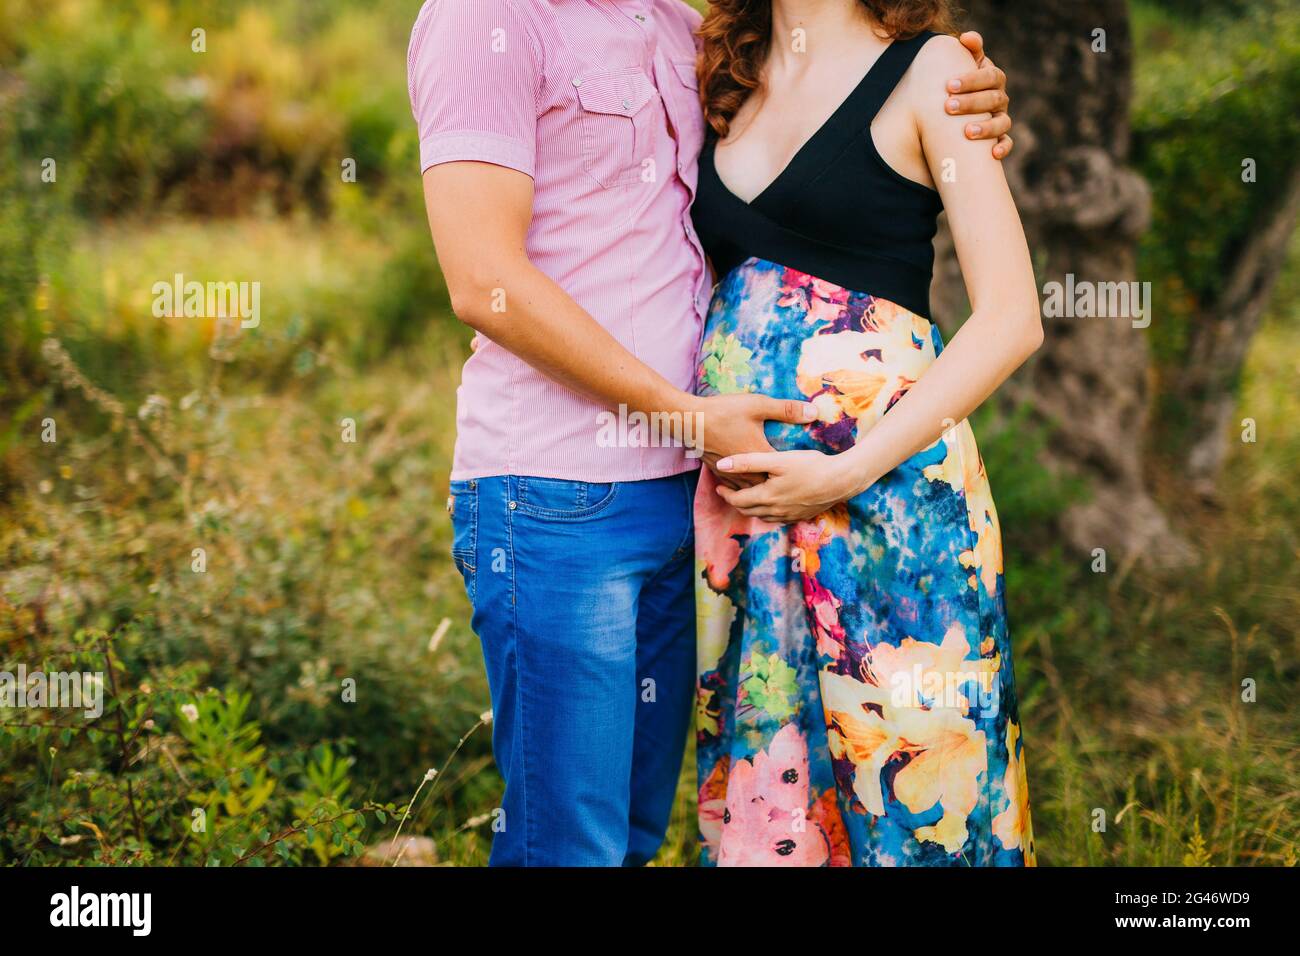 Mujer embarazada sujetando el vientre con las manos Foto de stock